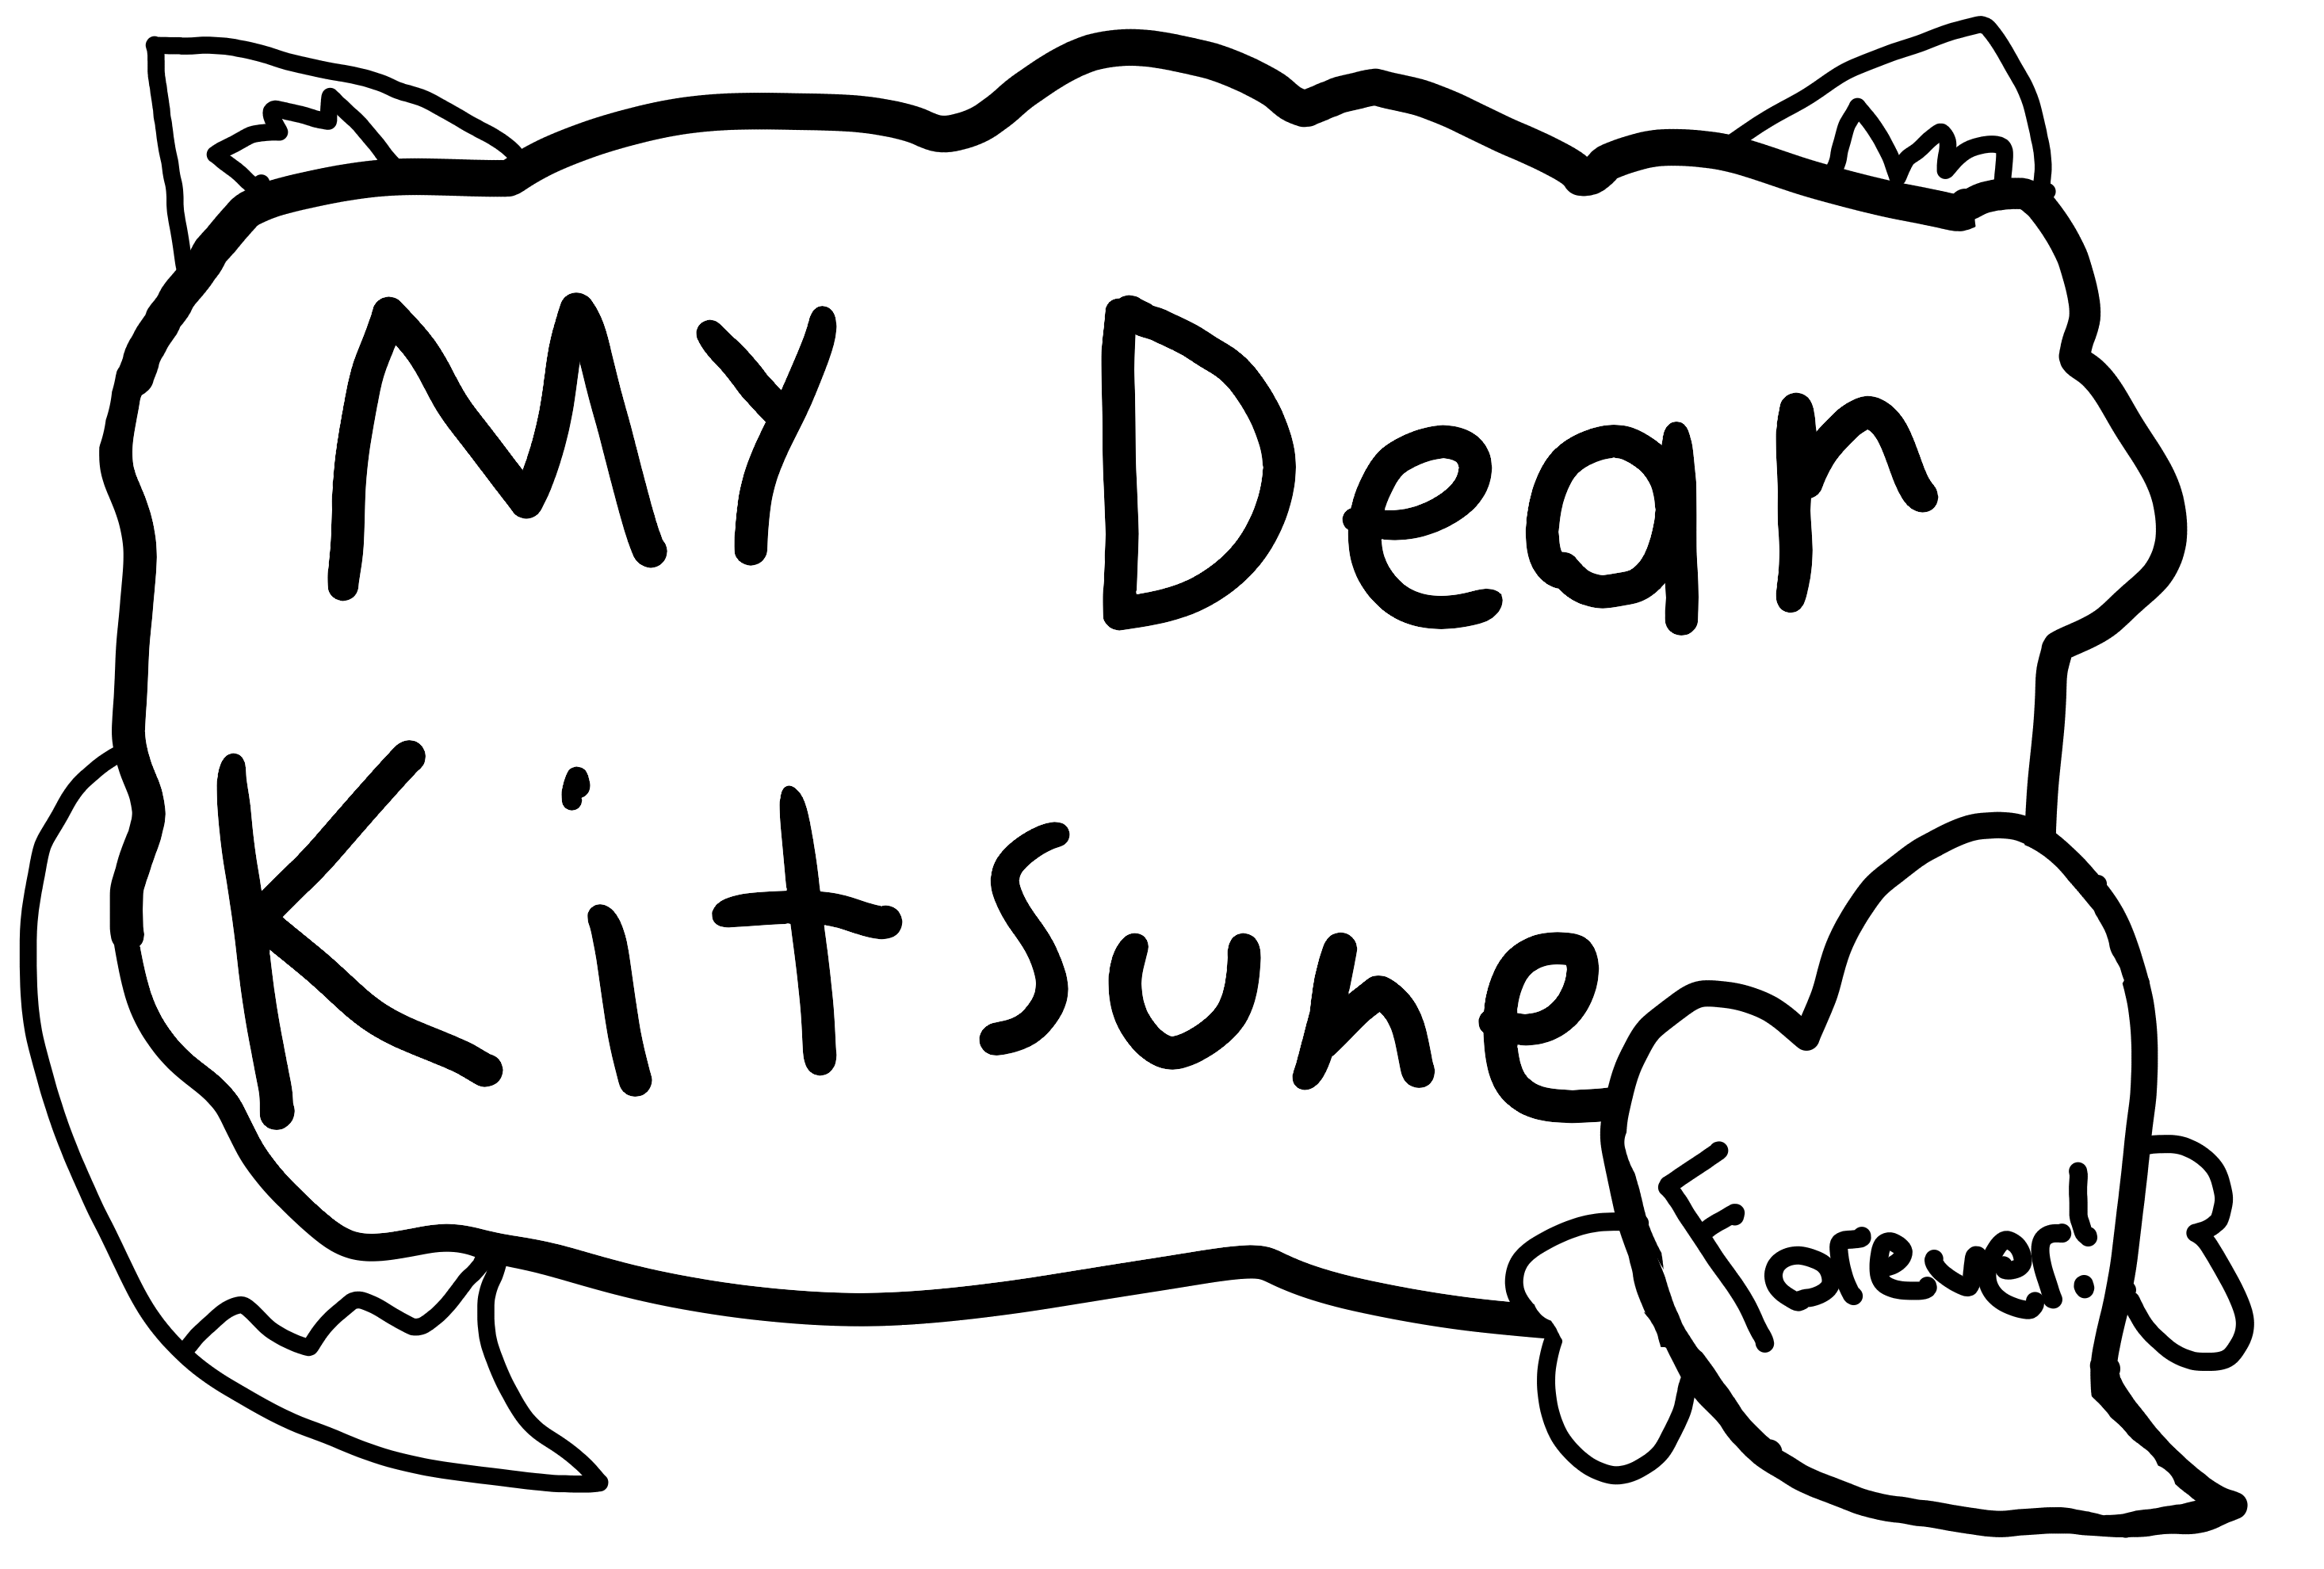 My Dear Kitsune Forever!